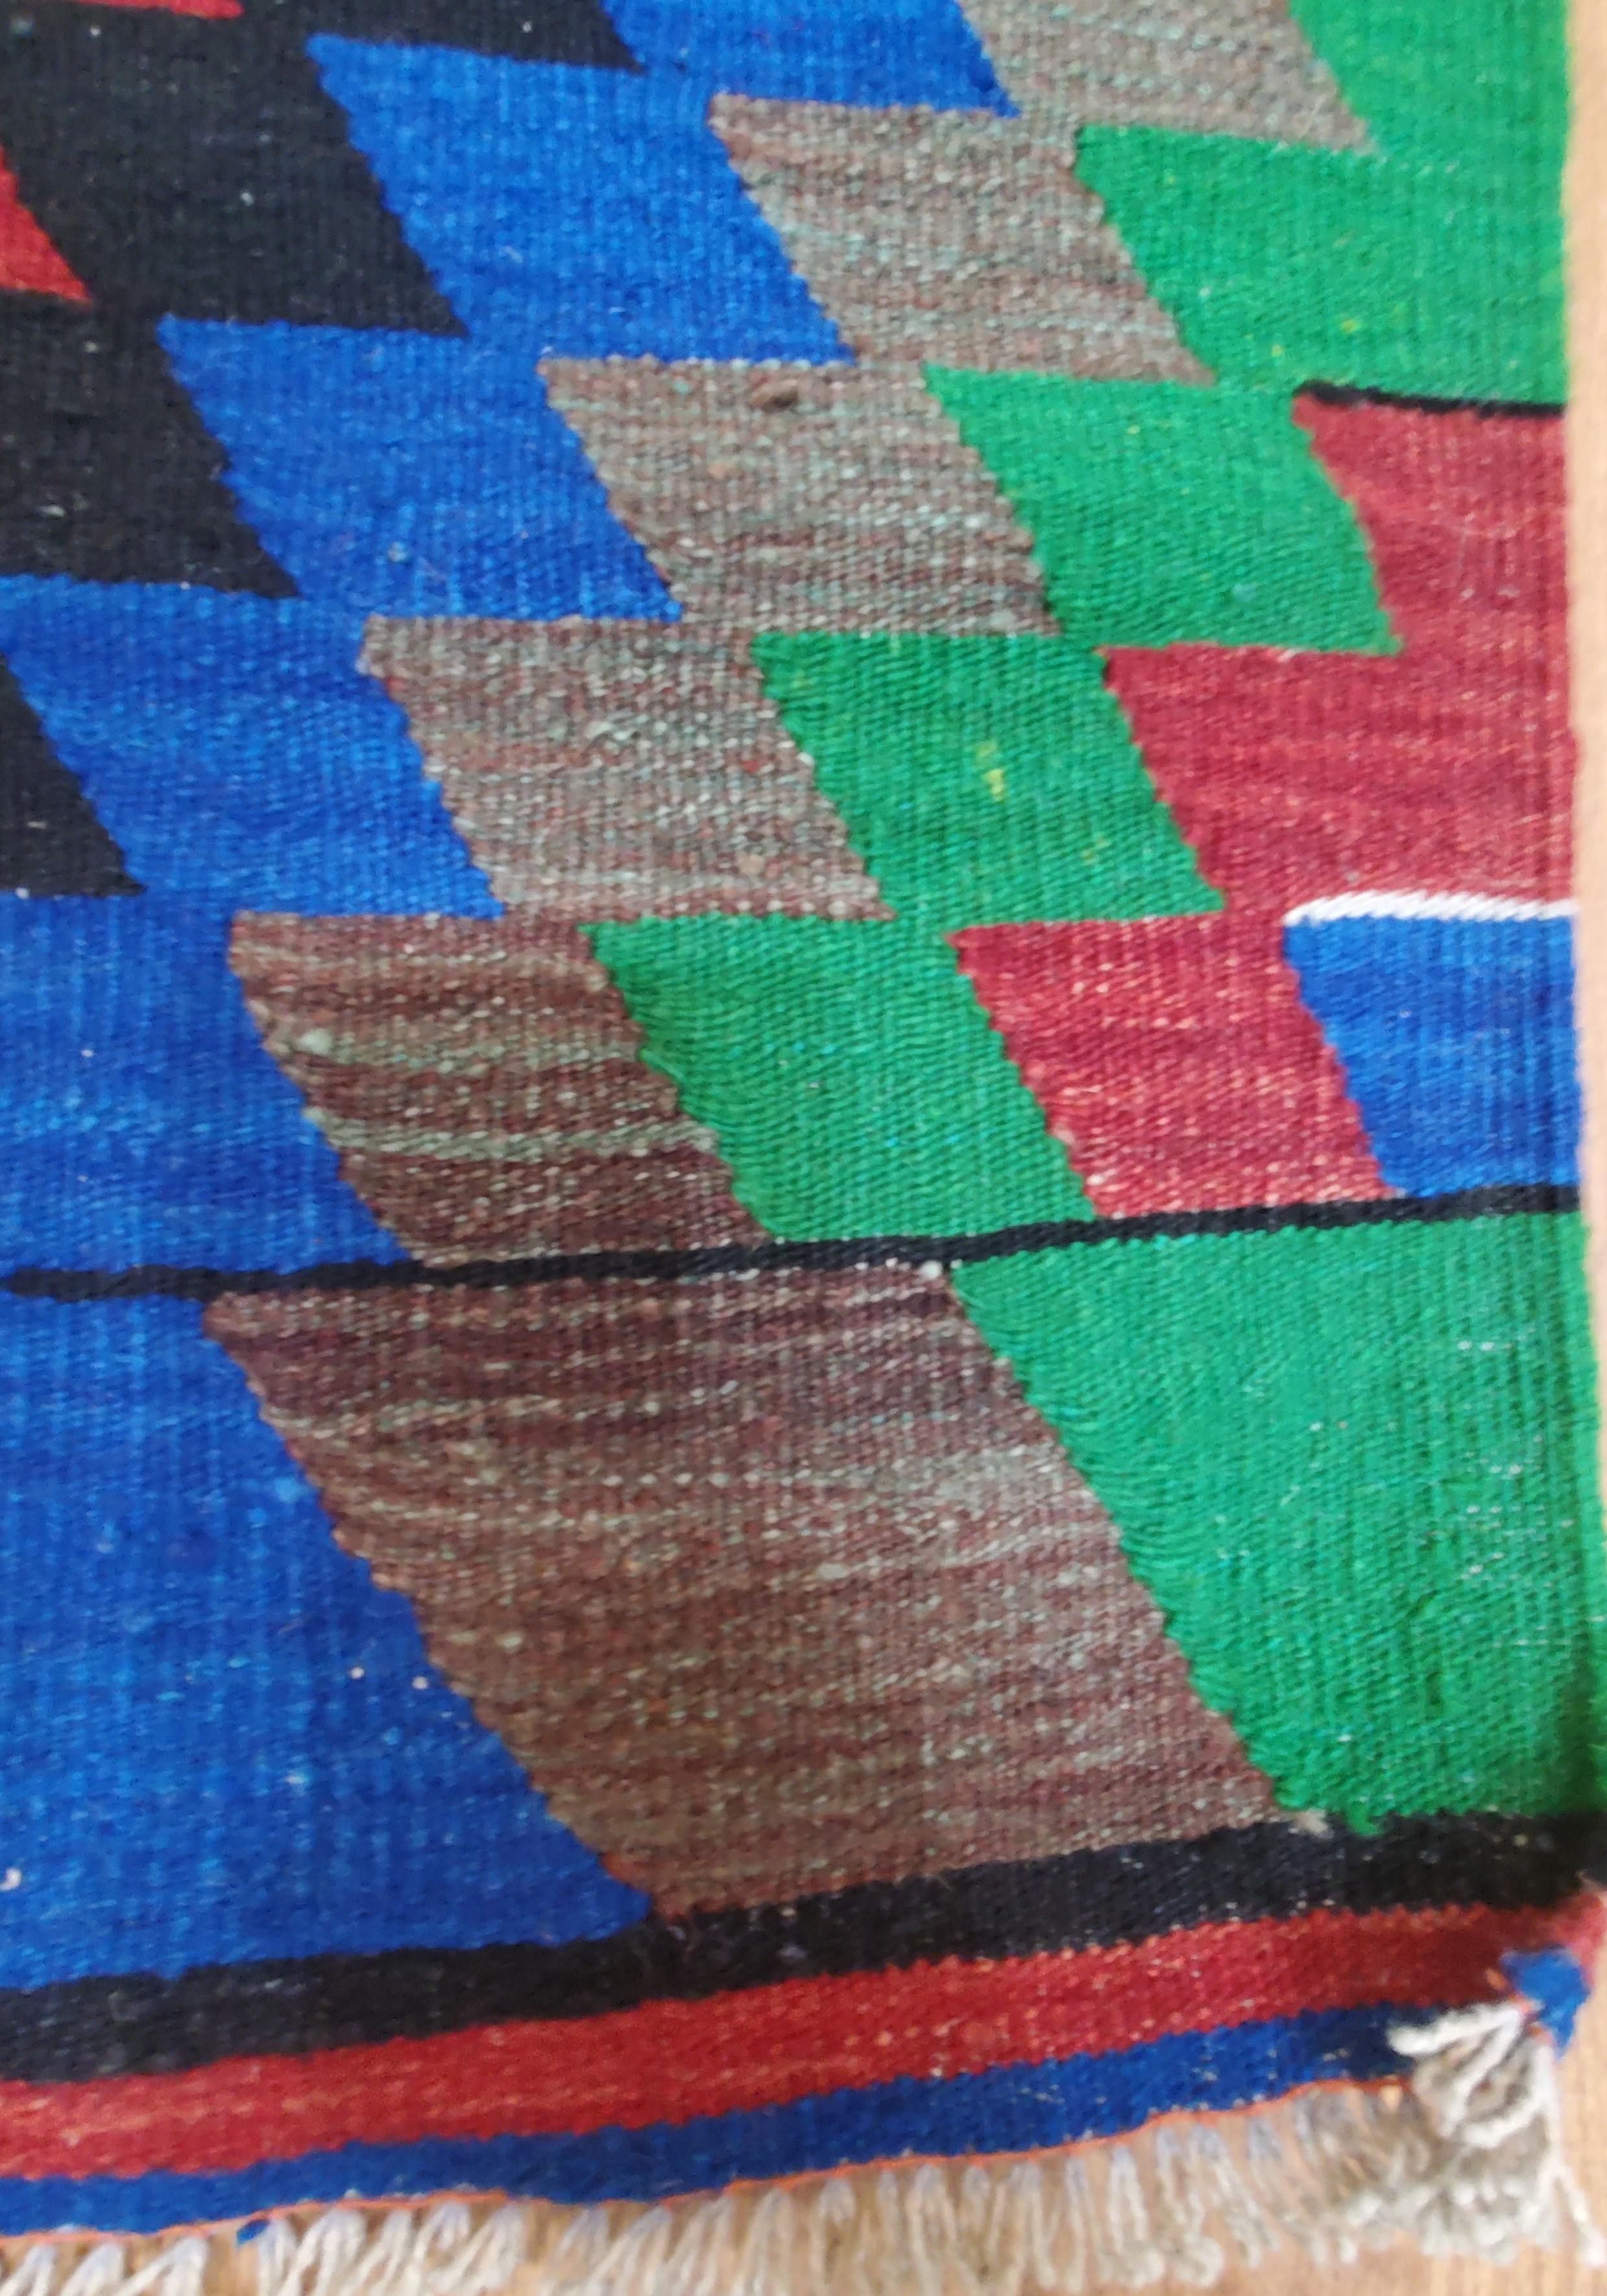 Retro Mid Century European Hand Made Rug. Eine wunderbare Farbpalette mit einem geometrischen Retro-Mix sorgte für eine ganze Szene voller Farbe und Schönheit.

Dieser Teppich misst ungefähr - 10,5 breit x 6,5 lang